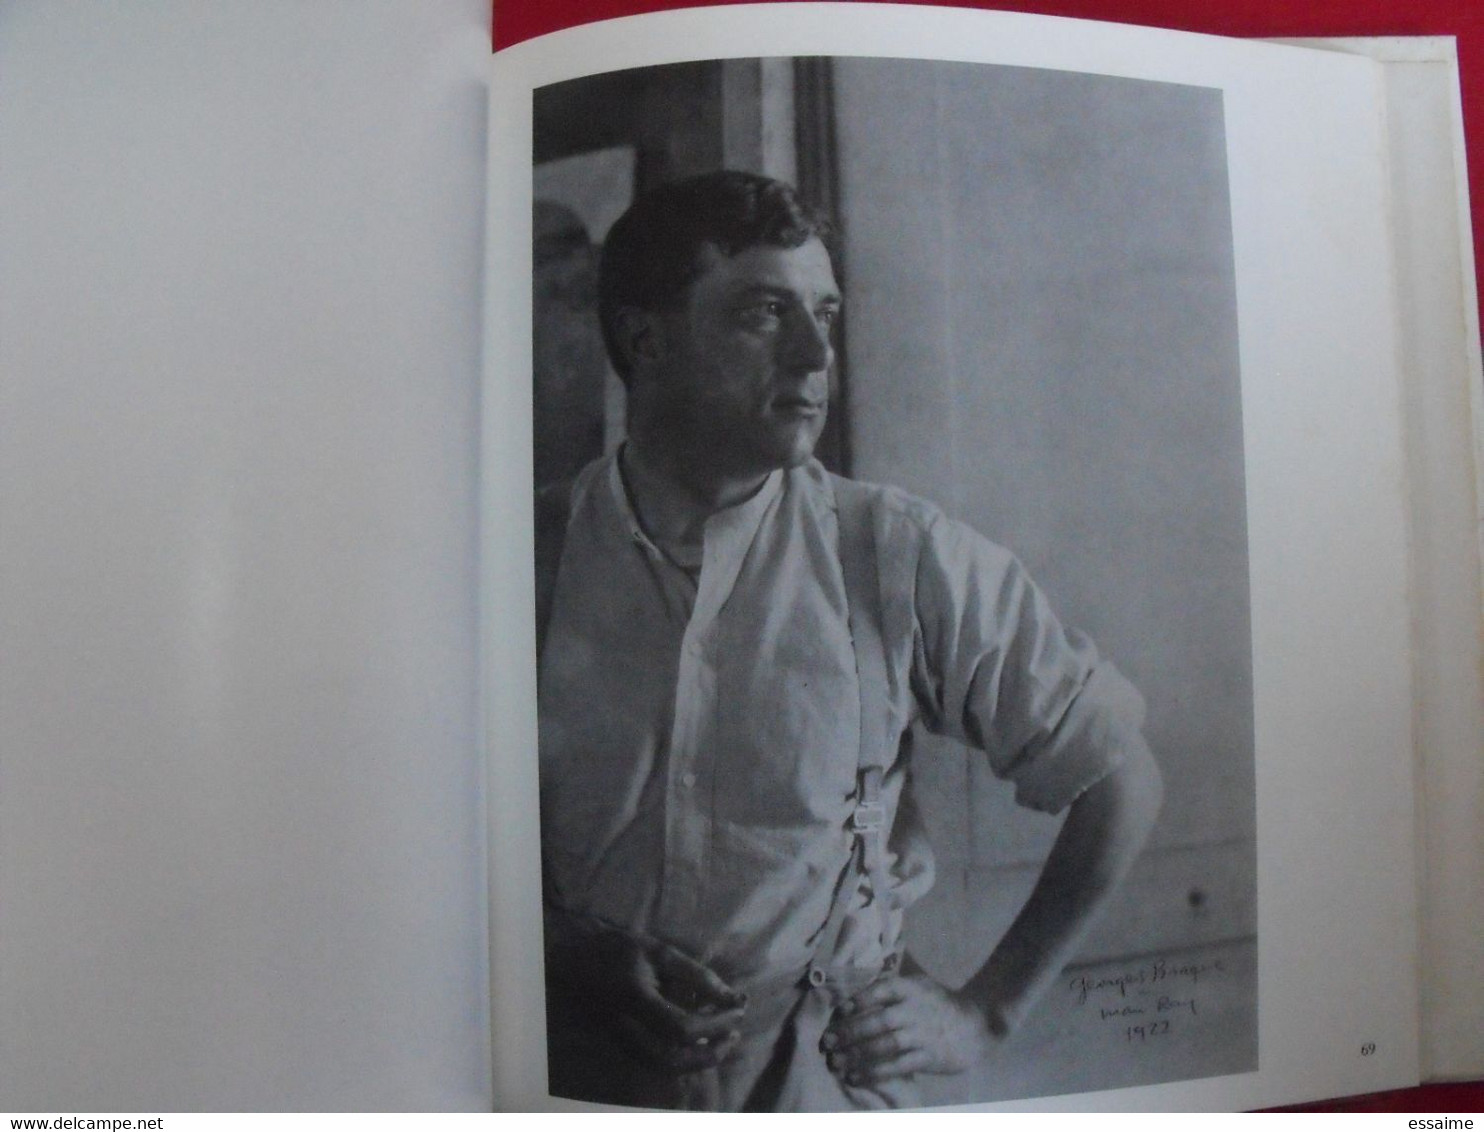 Man Ray. Aperture 1979. livre de photos. histoire de la photographie.